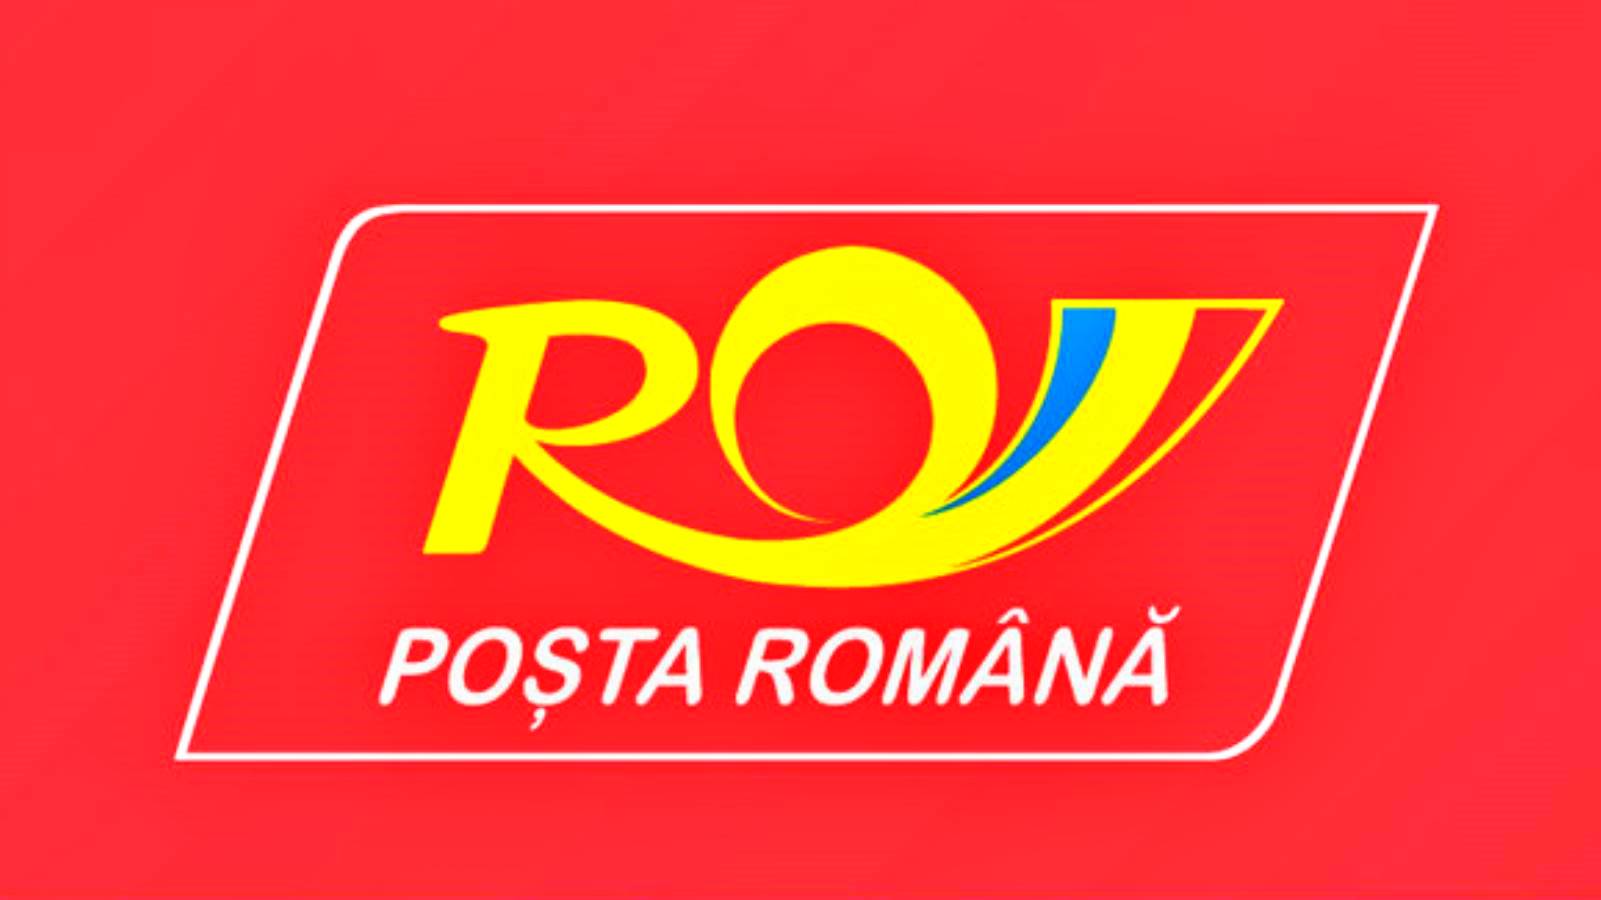 Assurance postale roumaine des envois contre le vol et la destruction